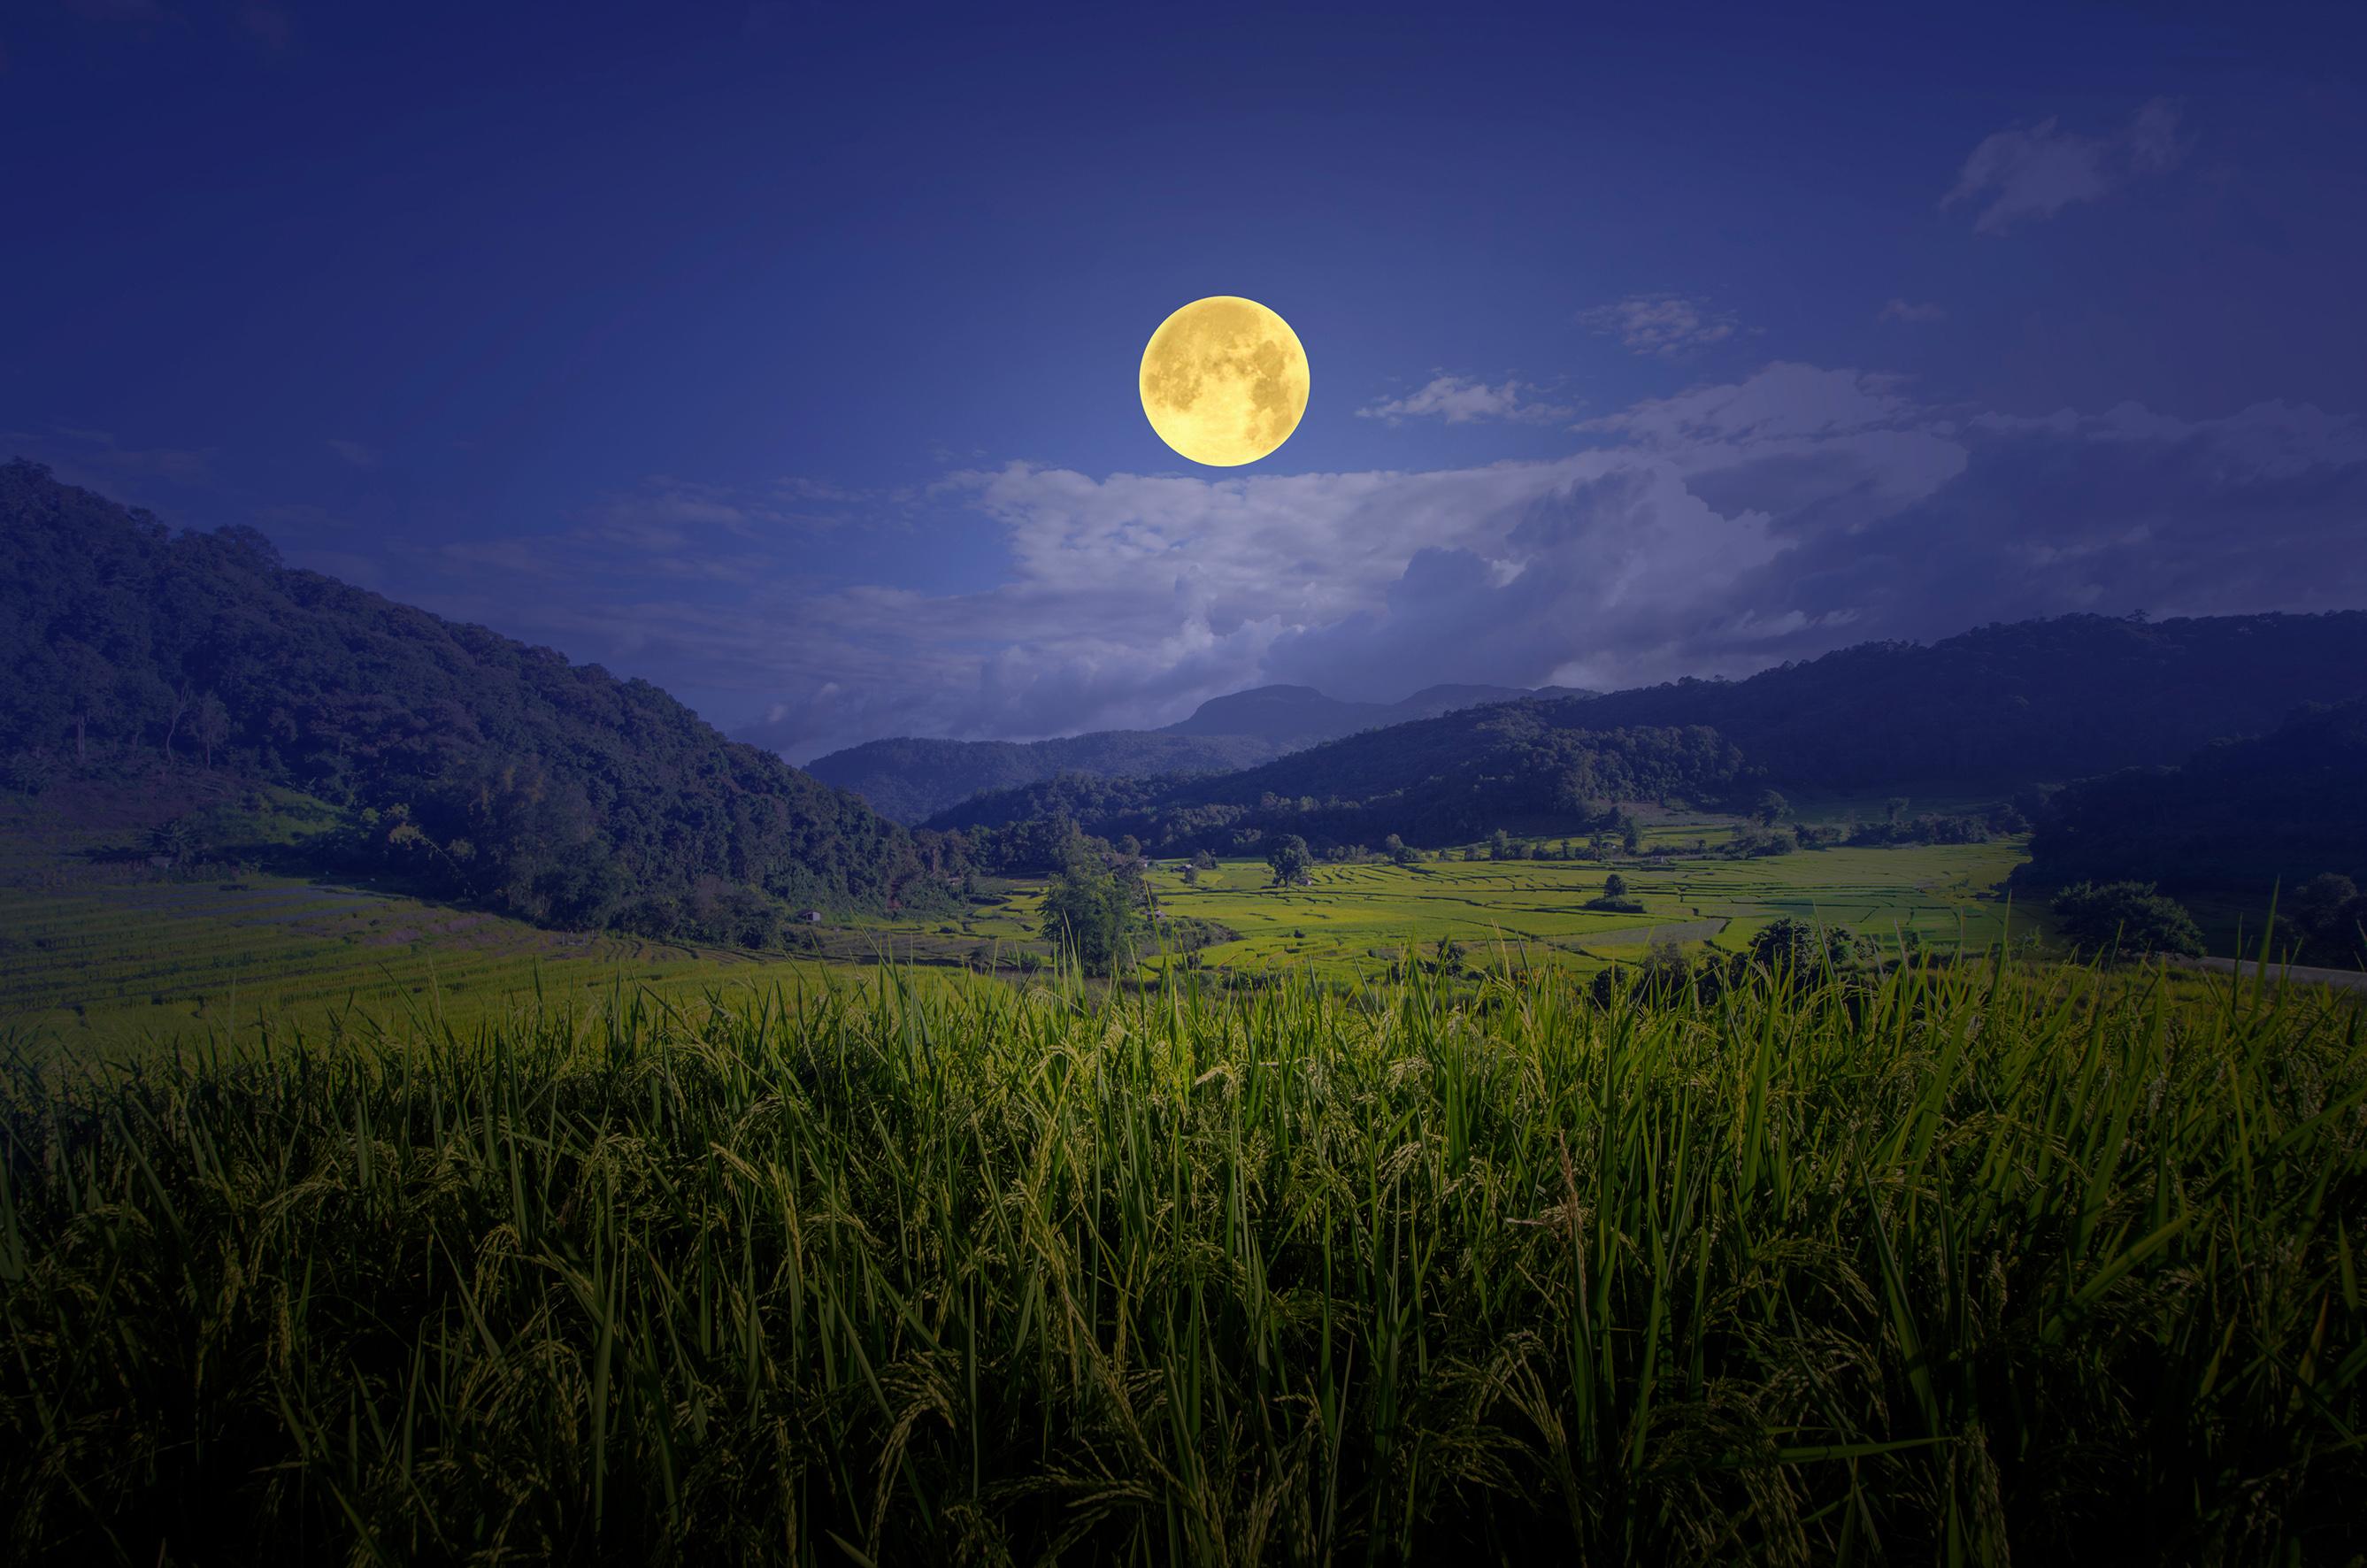 La luna influenza davvero l’agricoltura?